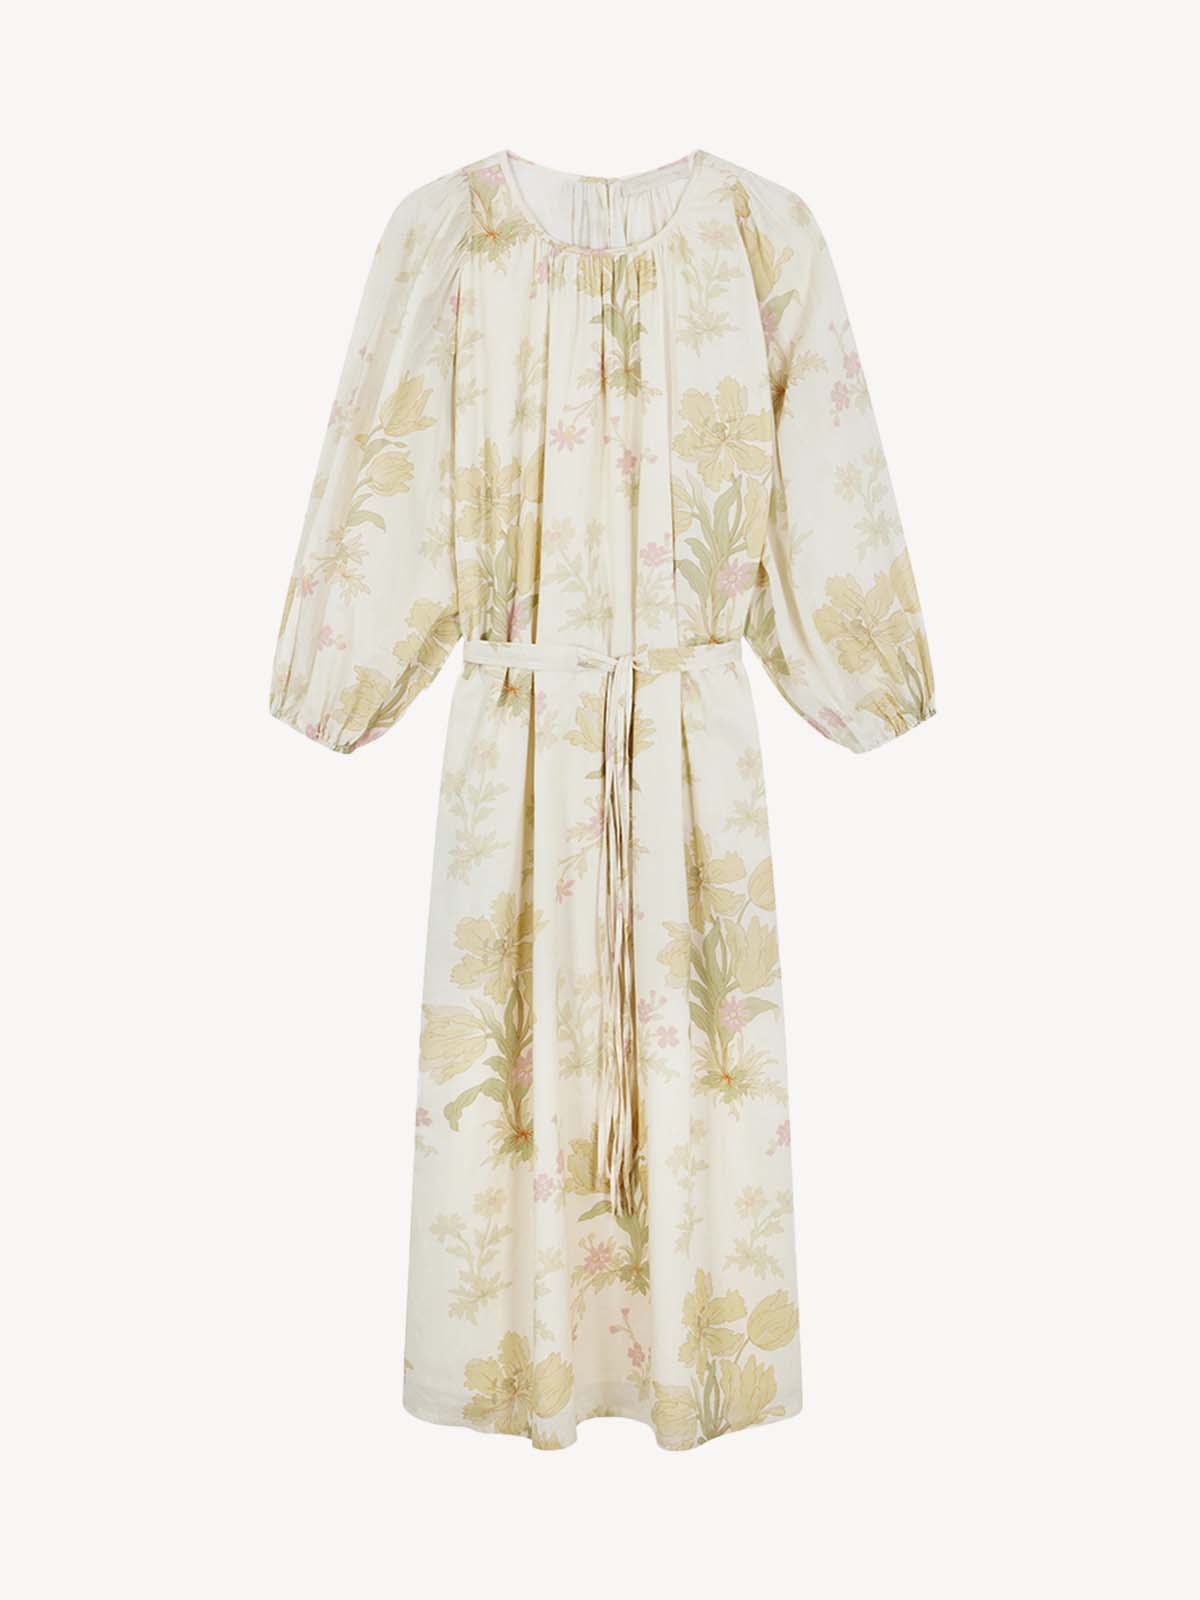 Vanessa bruno - Telekia kjole cream med mønster